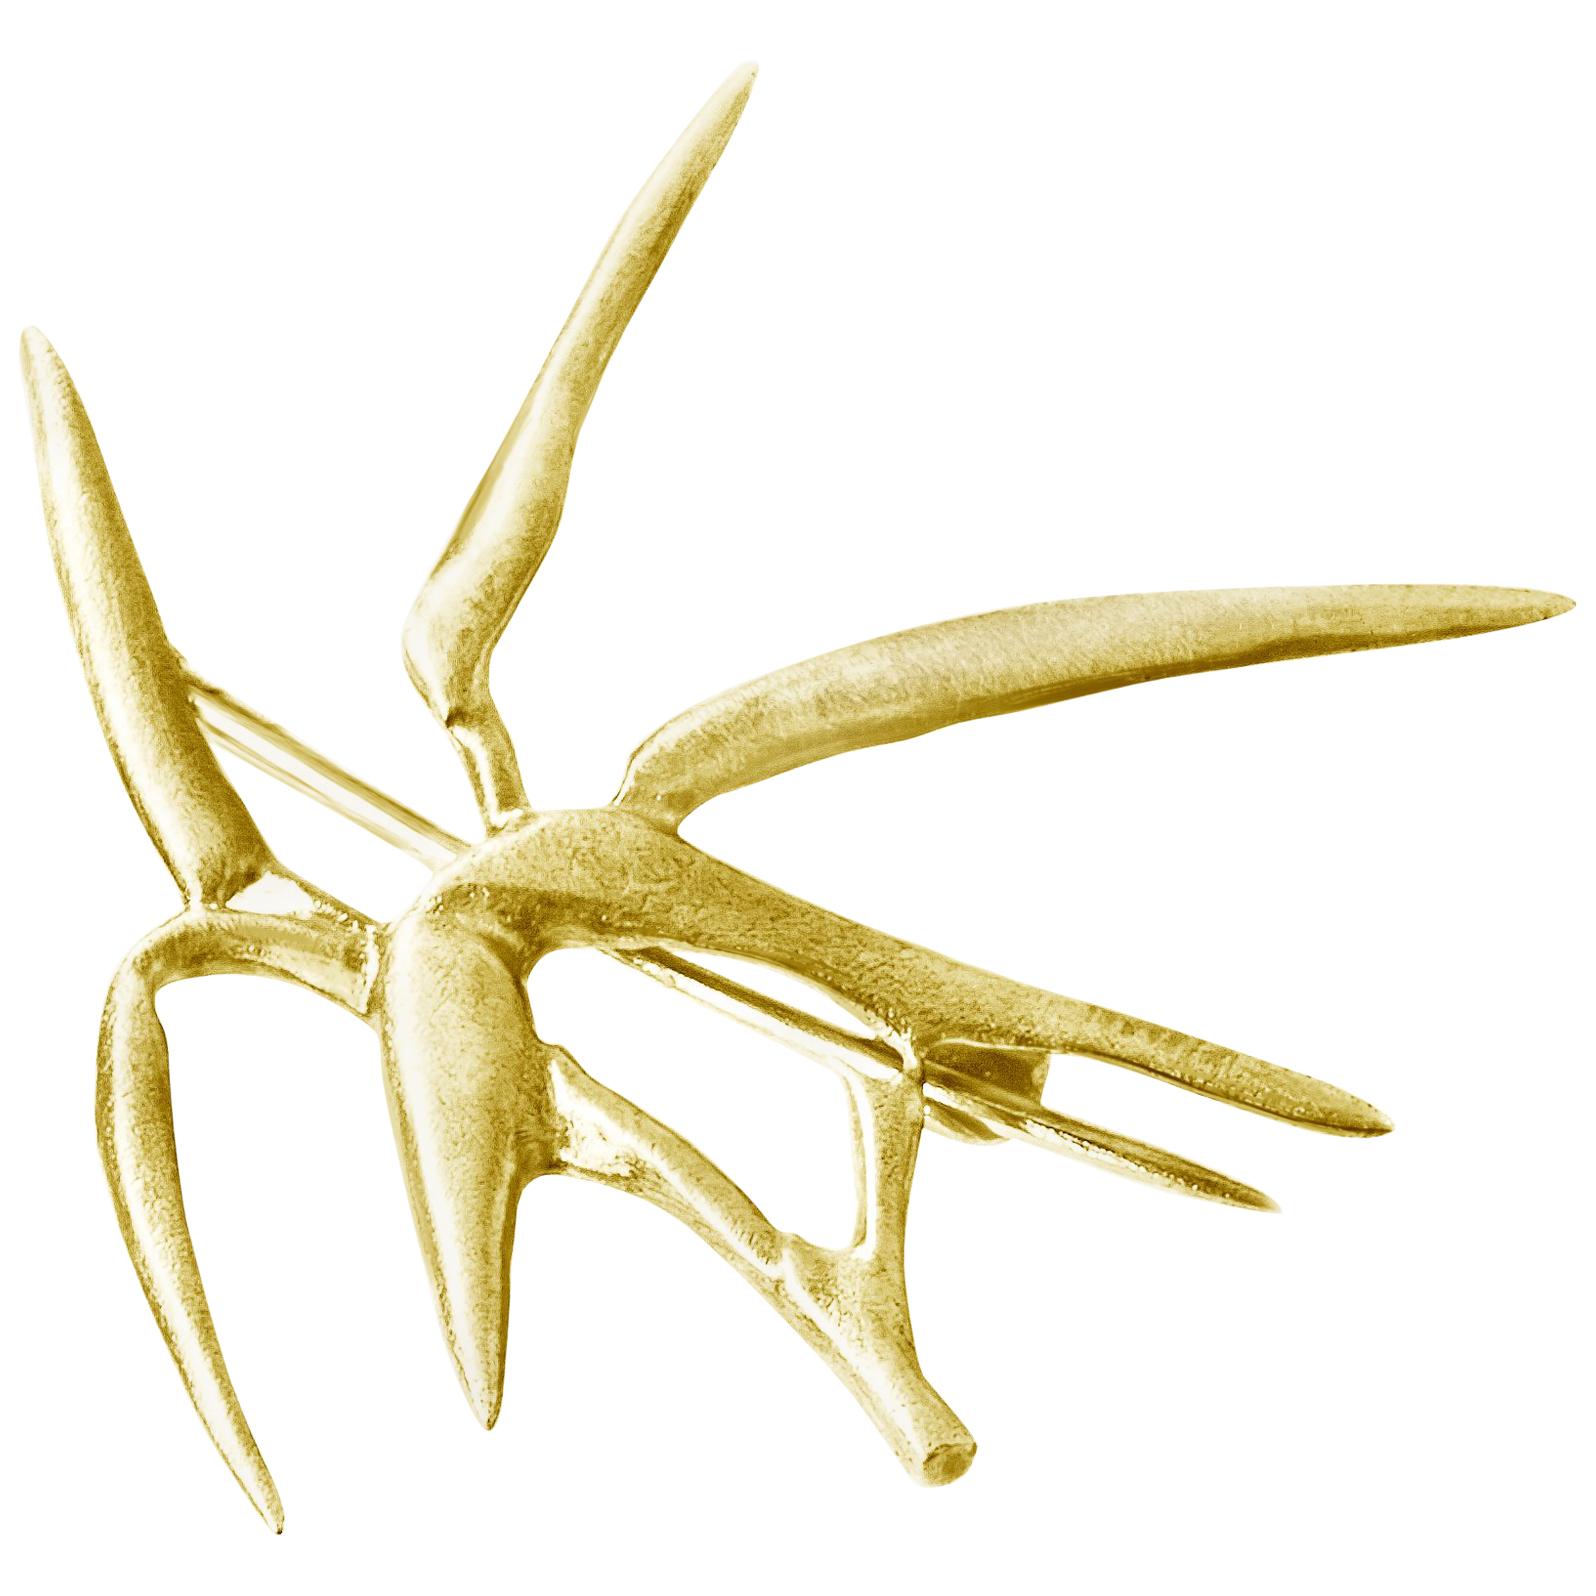 Bambusbrosche aus vierzehn Karat Gelbgold des Künstlers